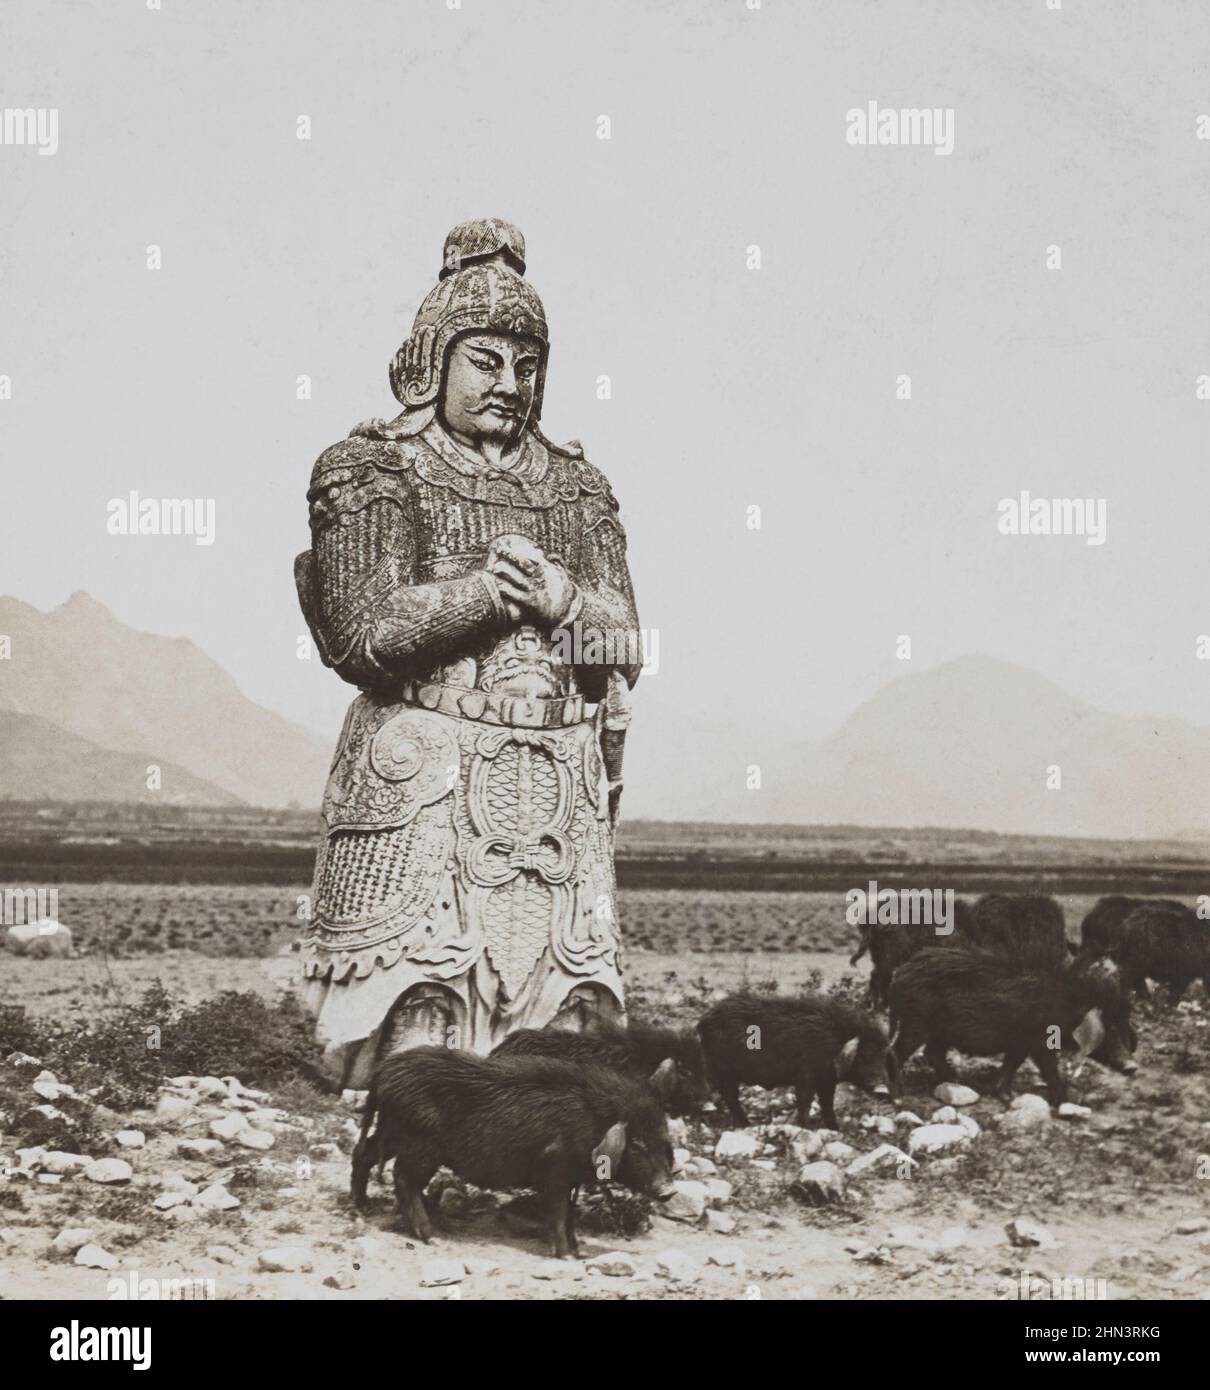 Photo ancienne de la sculpture chinoise d'un soldat de marbre. Les Tombeaux Ming. Chine du Nord. 1902 Banque D'Images